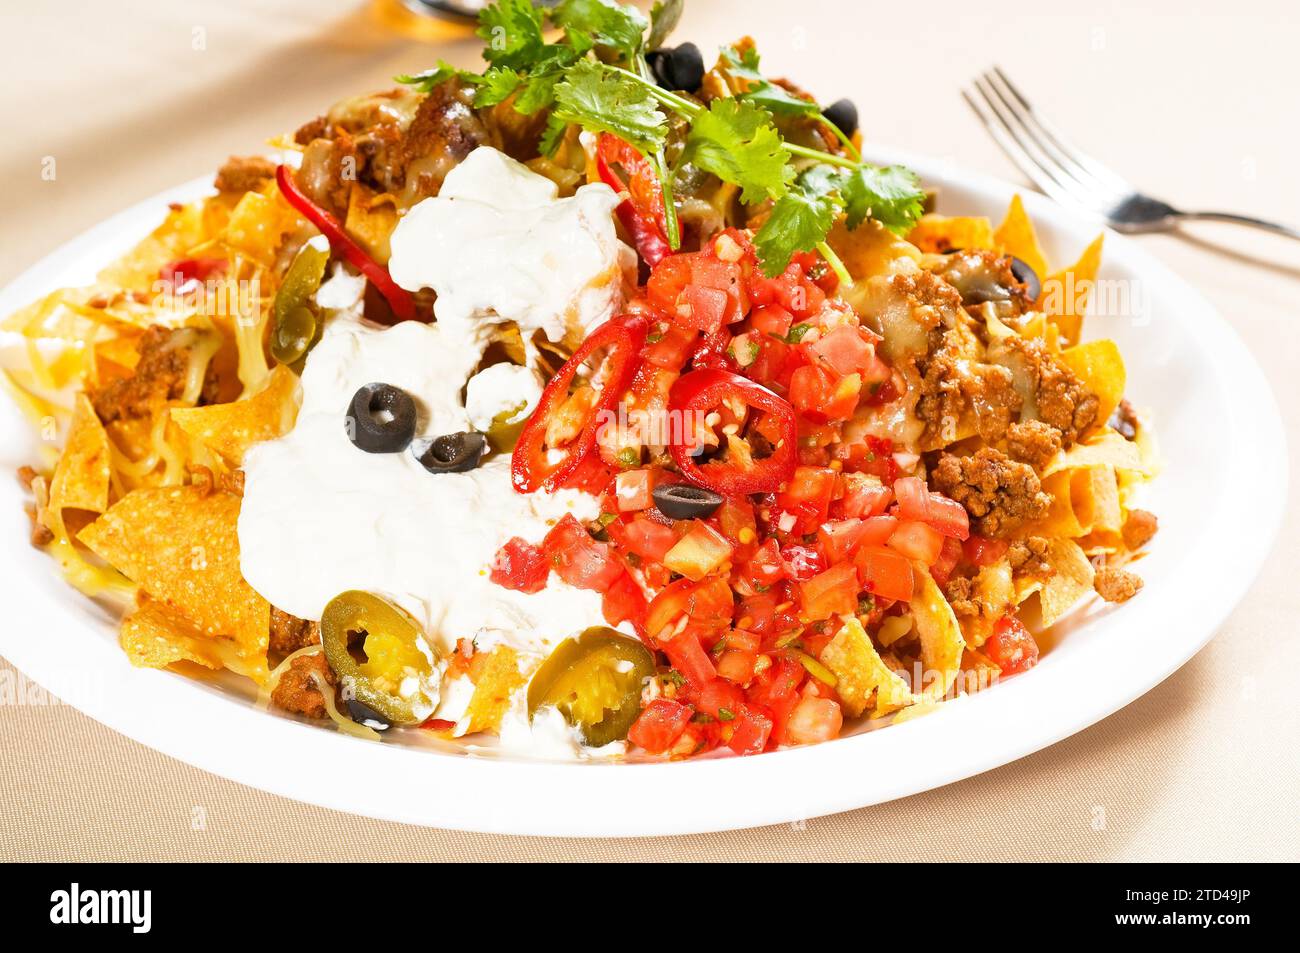 Nachos frais et salade de légumes avec viande, Chili con carne, nourriture mexicaine tipycal, photographie alimentaire Banque D'Images